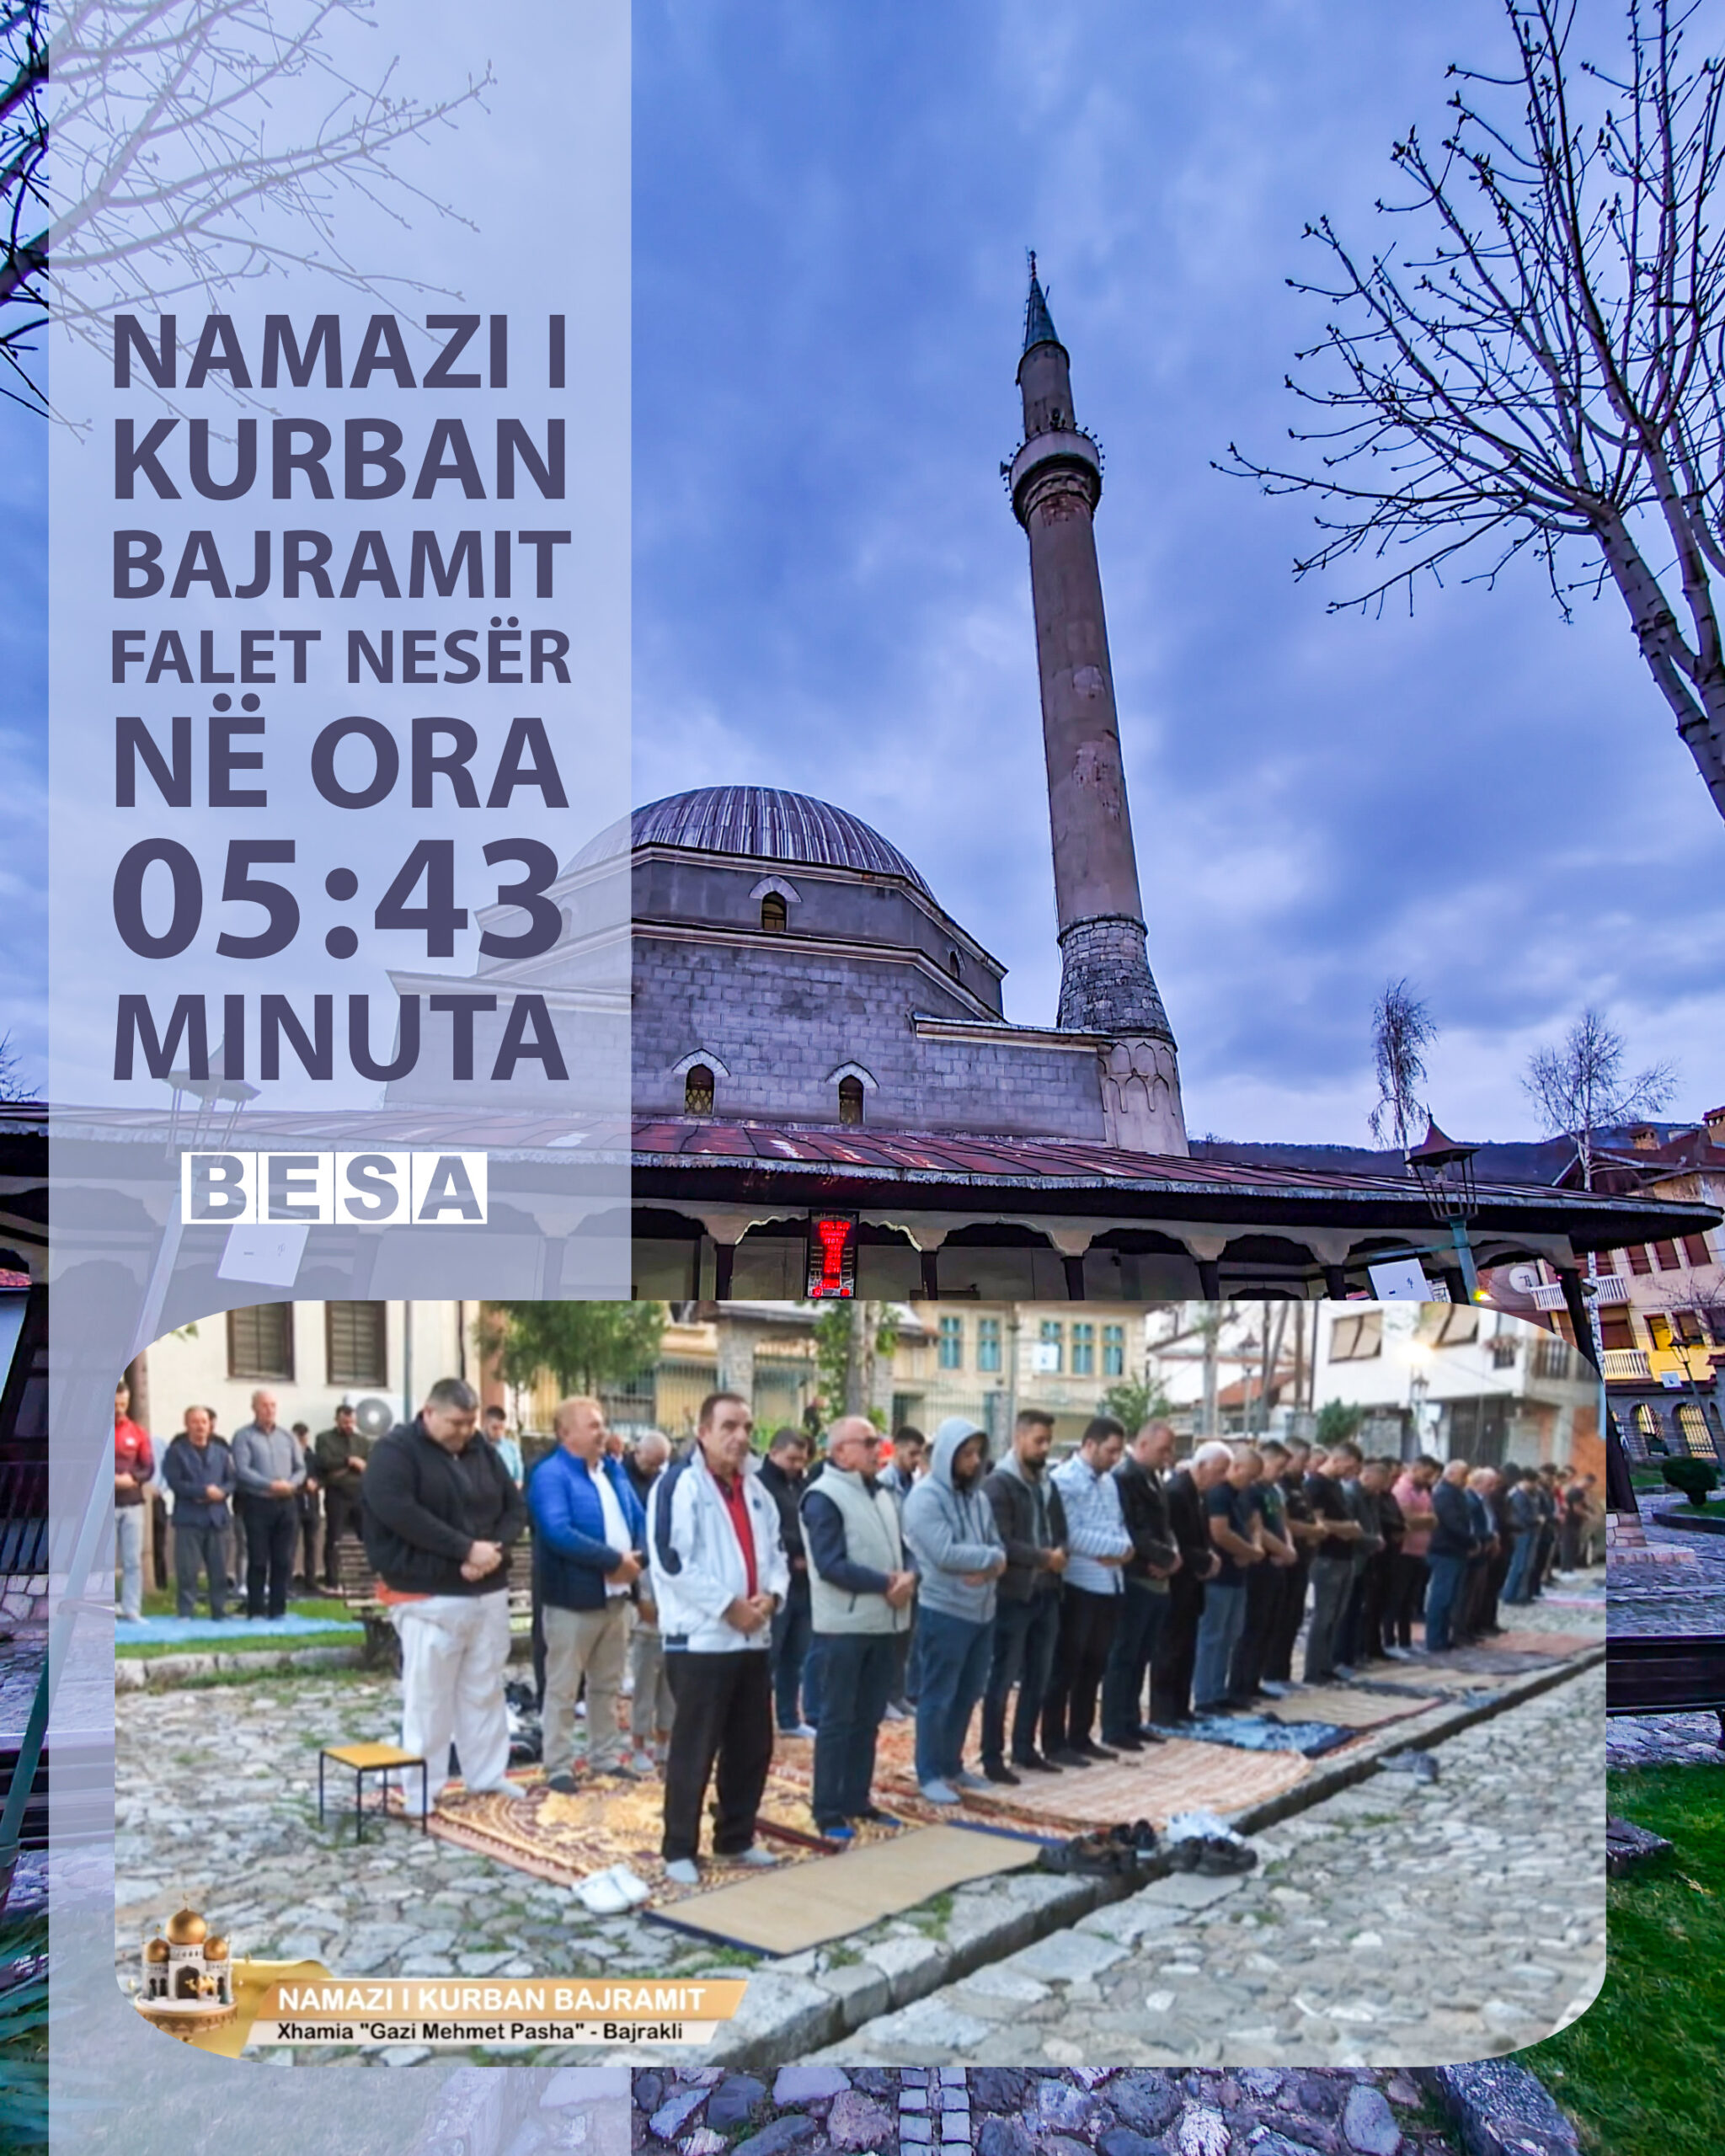 Namazi i Kurban Bajramit në Prizren falet nesër në ora 05:43 minuta